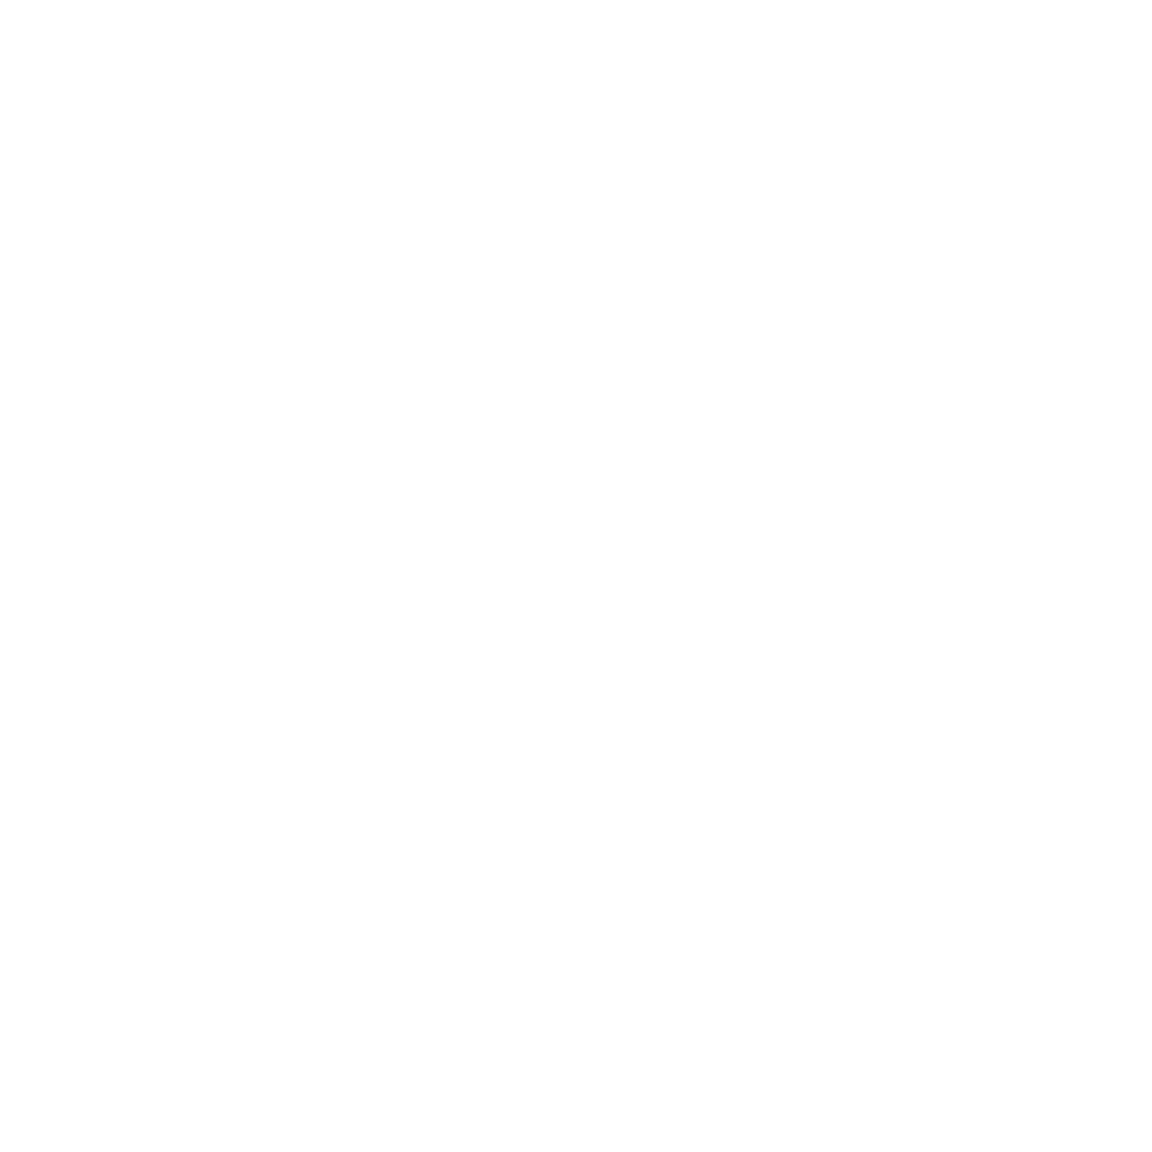 NYC Carbon Zero Hub Initiative